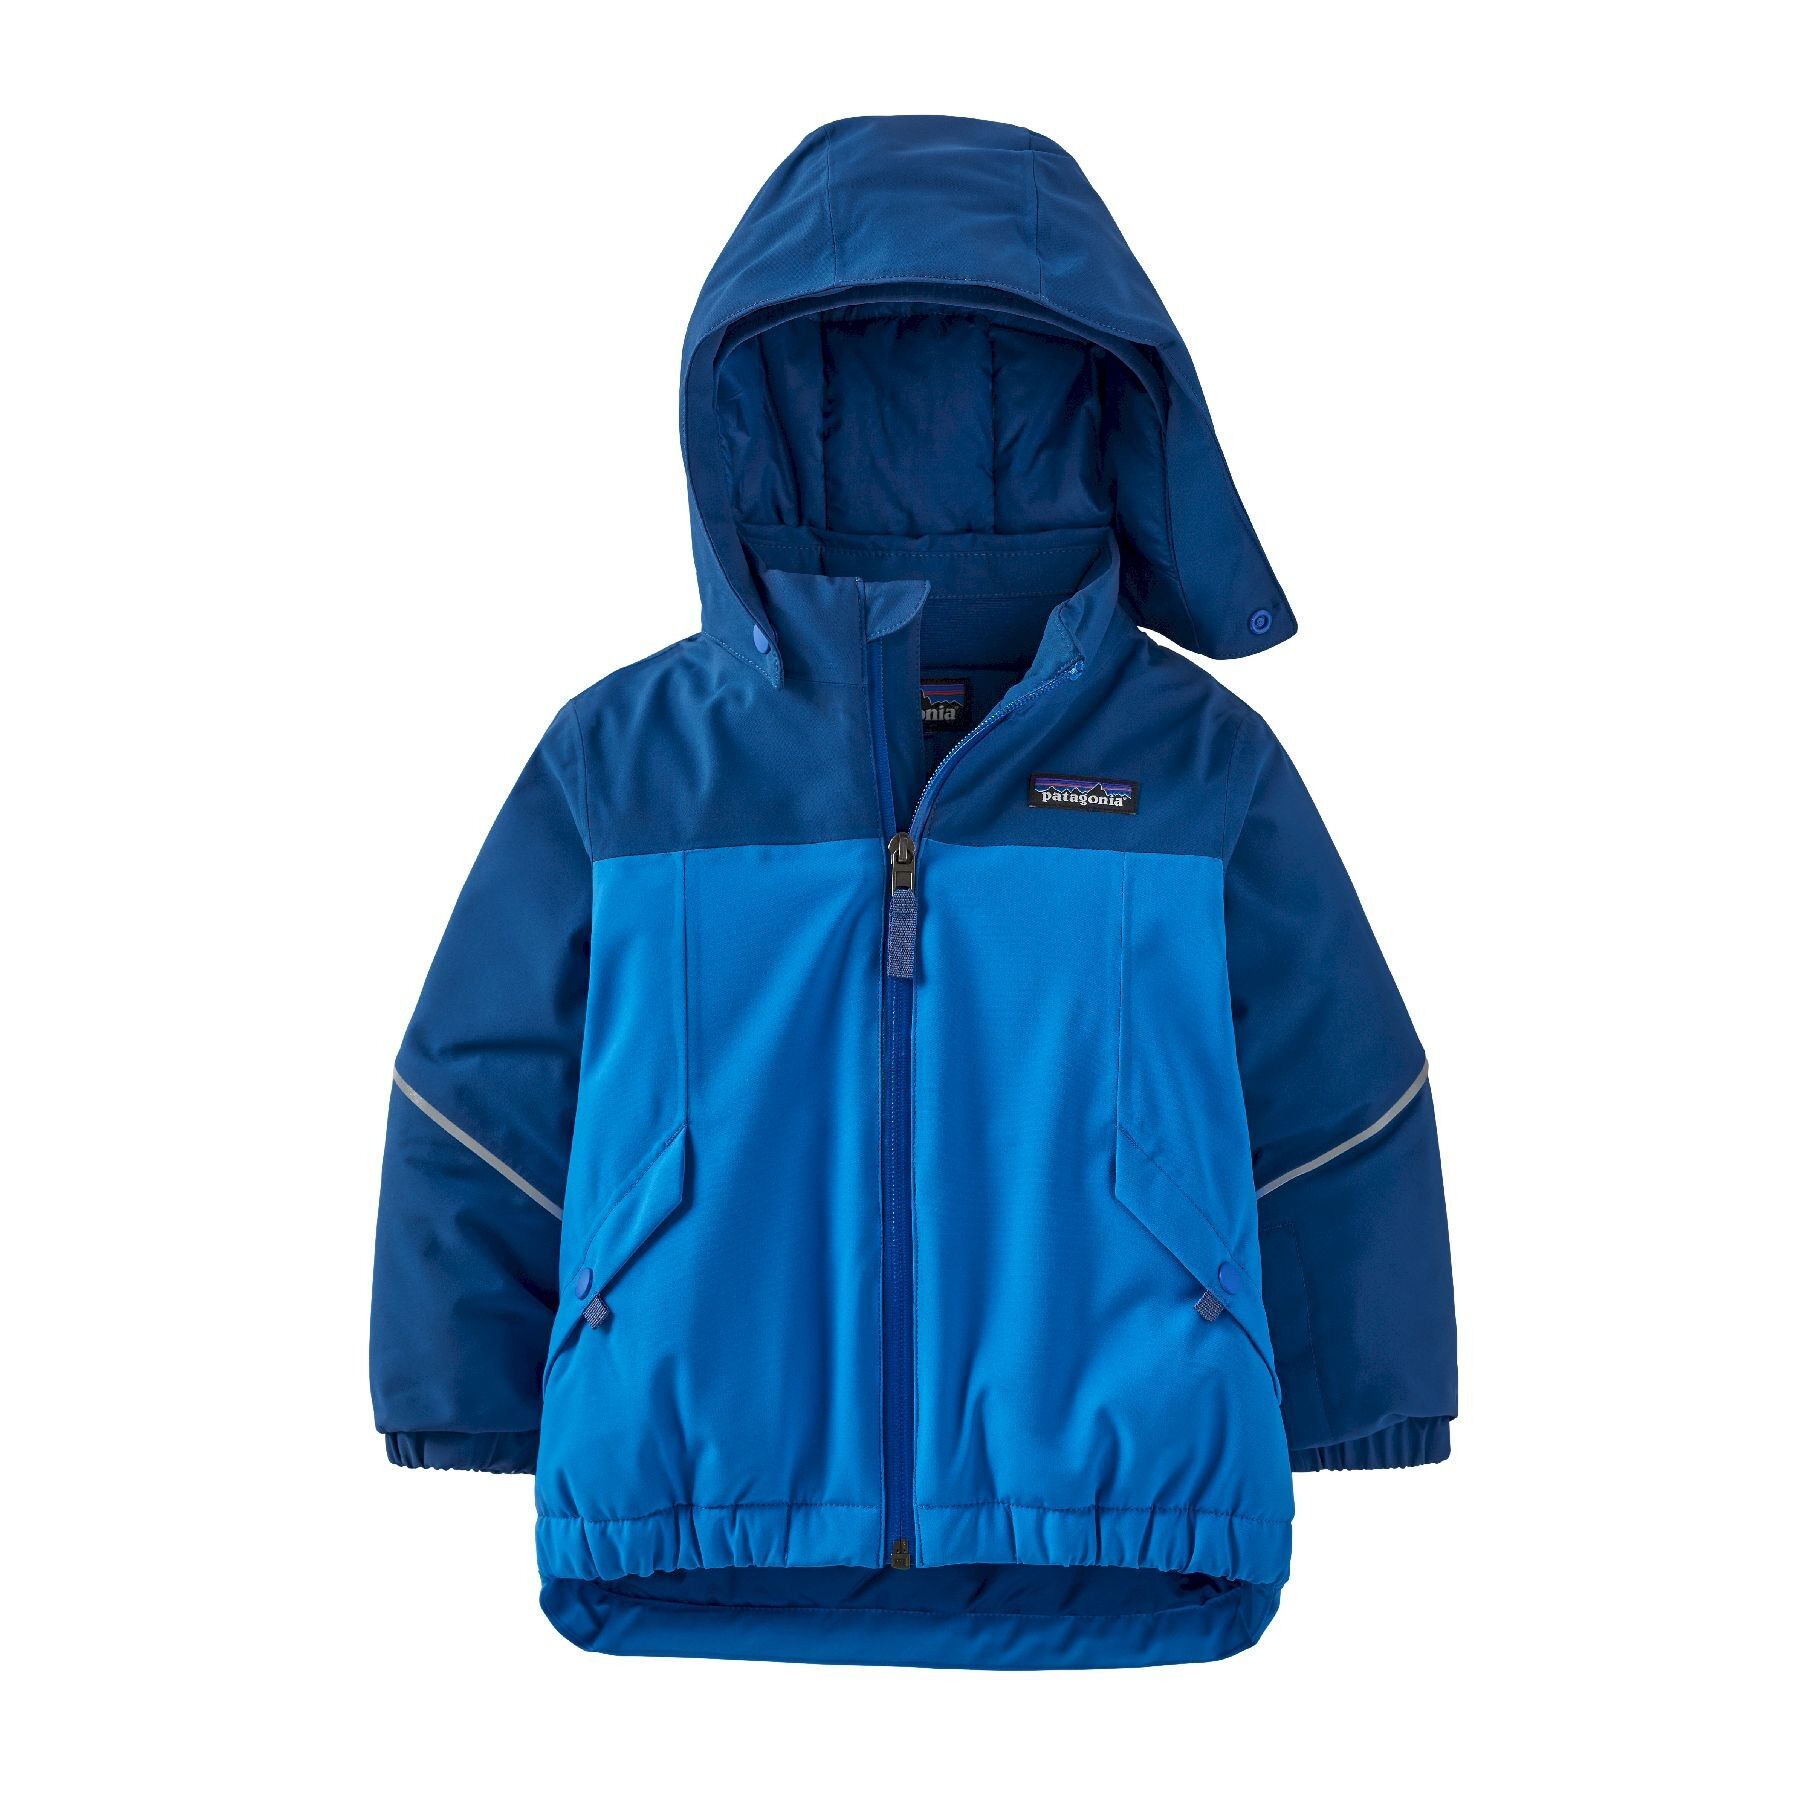 Patagonia Baby Snow Pile Jacket - Skijacke - Kind